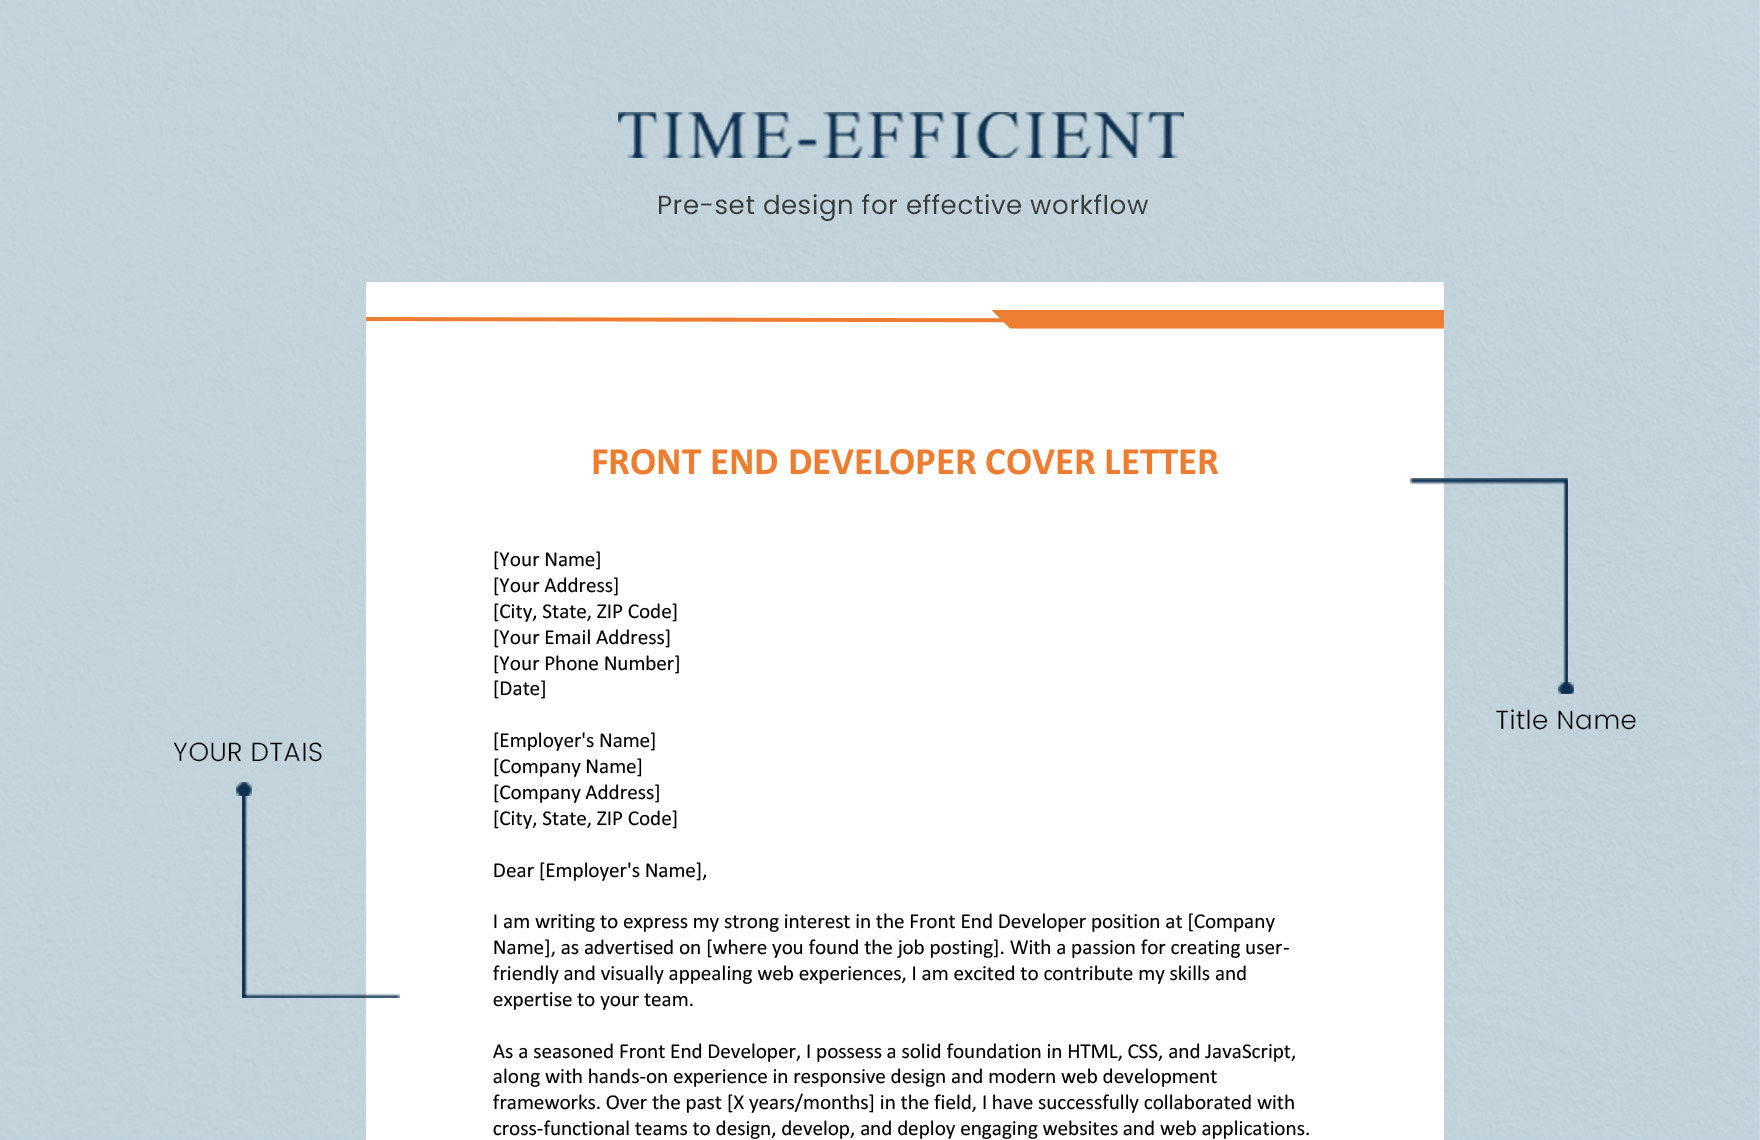 Front End Developer Cover Letter